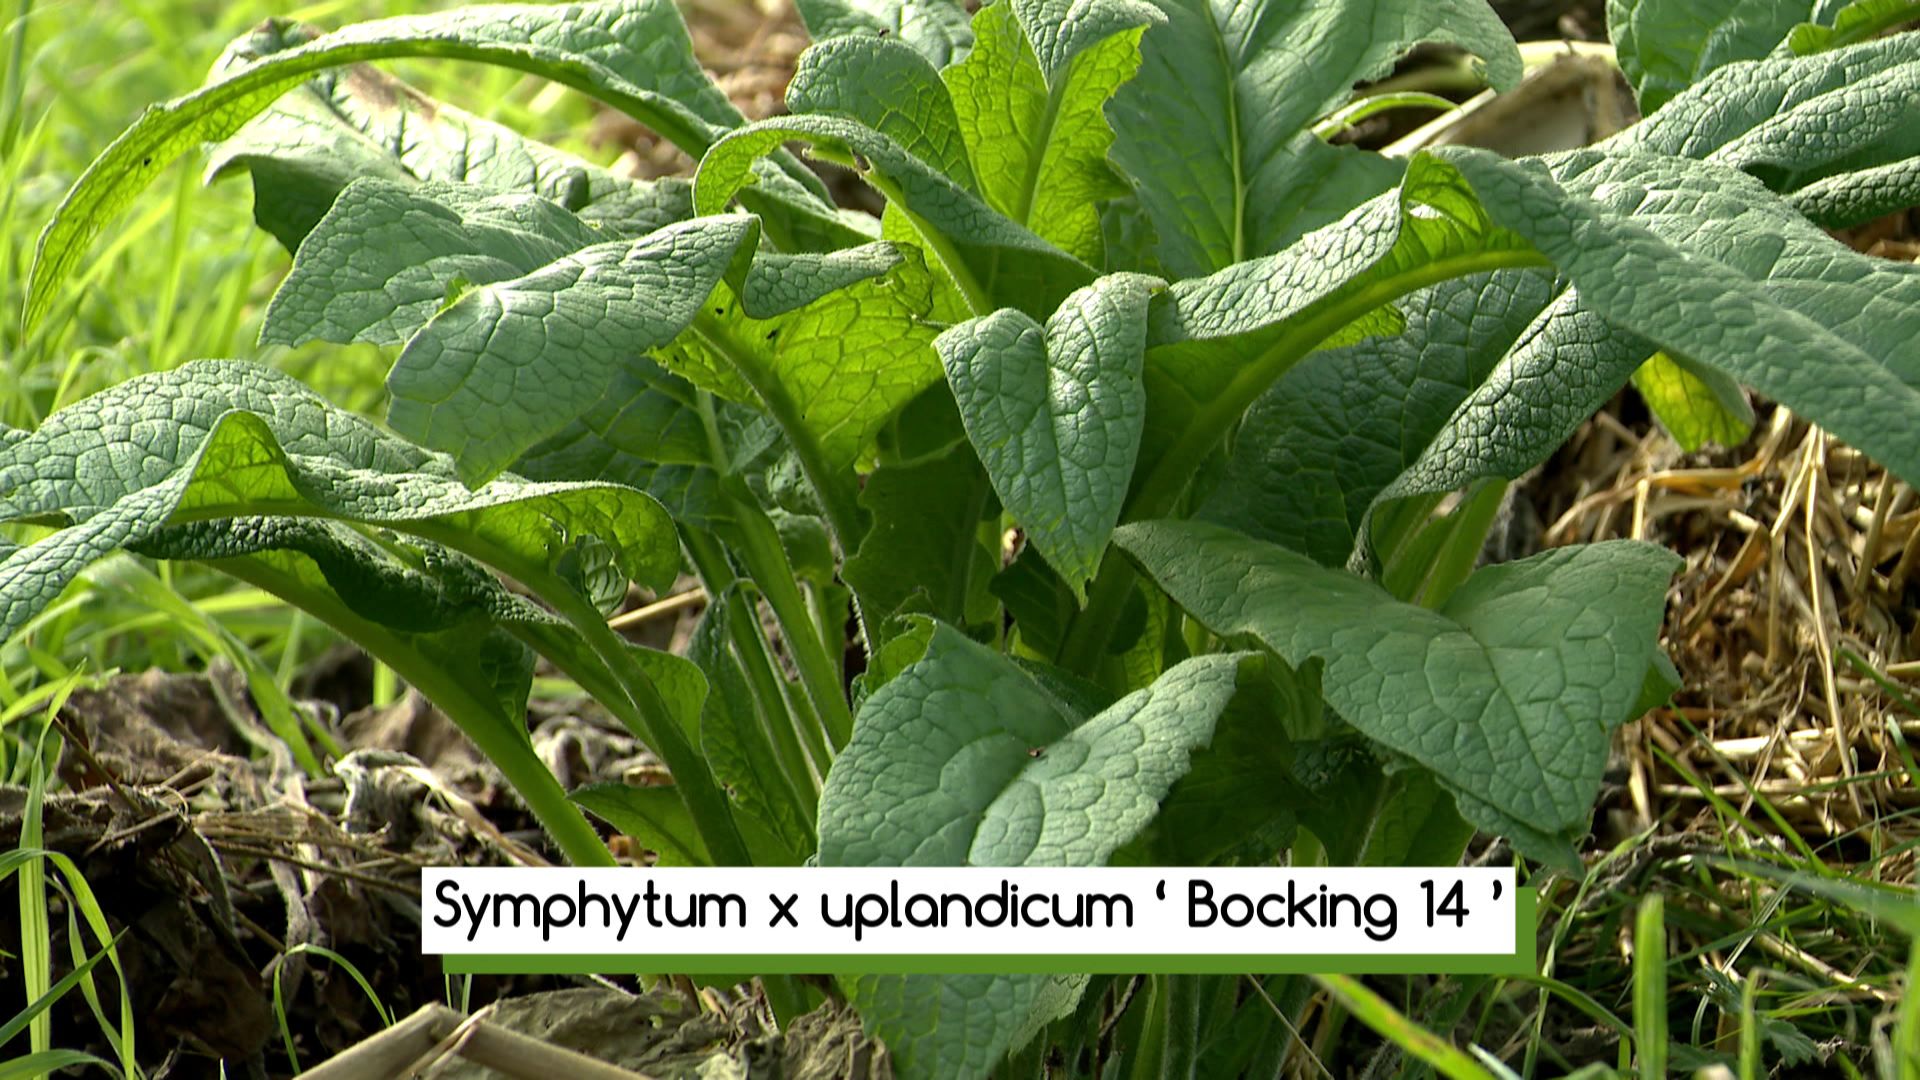 Le « Symphytum x uplandium ‘Boking 14’» variété de consoude.